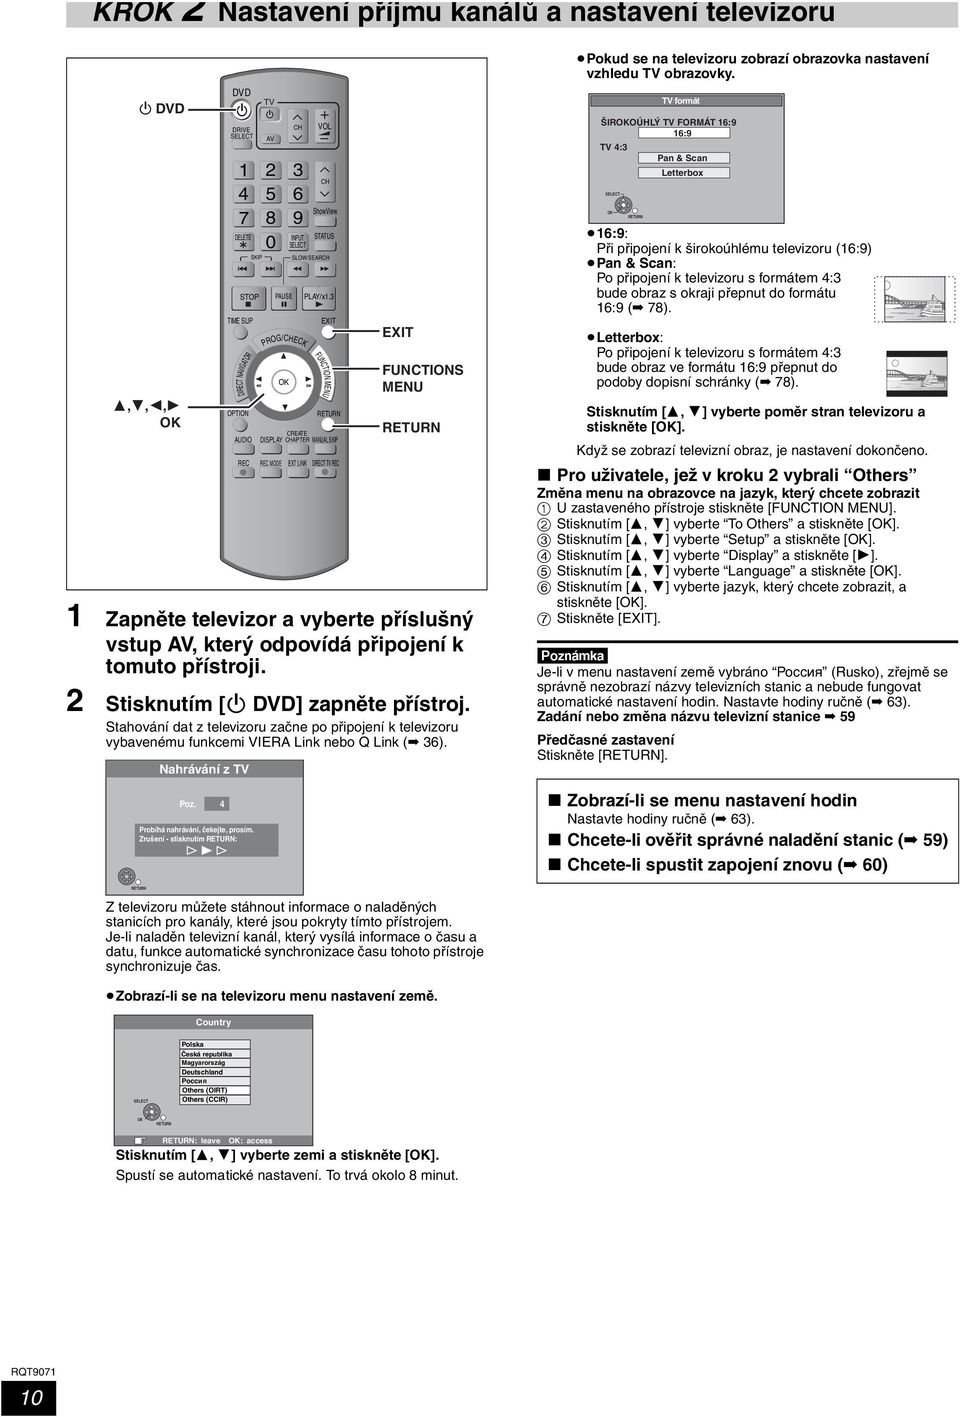 2 Stisknutím [Í DVD] zapněte přístroj. Stahování dat z televizoru začne po připojení k televizoru vybavenému funkcemi VIERA Link nebo Q Link ( 36). Nahrávání z TV Poz.